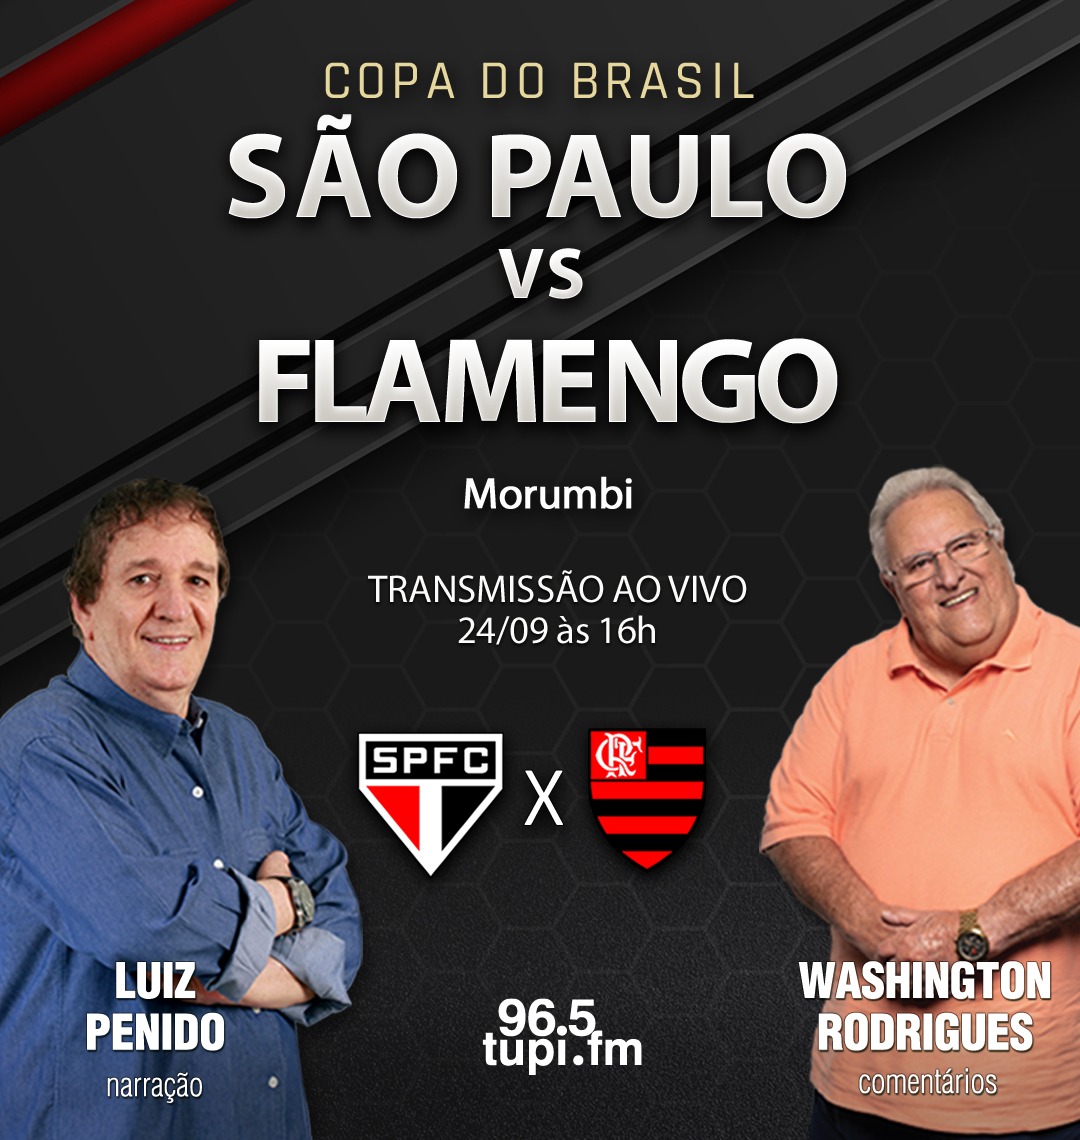 FLAMENGO X SÃO PAULO TRANSMISSÃO AO VIVO DIRETO DO MORUMBI - FINAL DA COPA  DO BRASIL 2023 